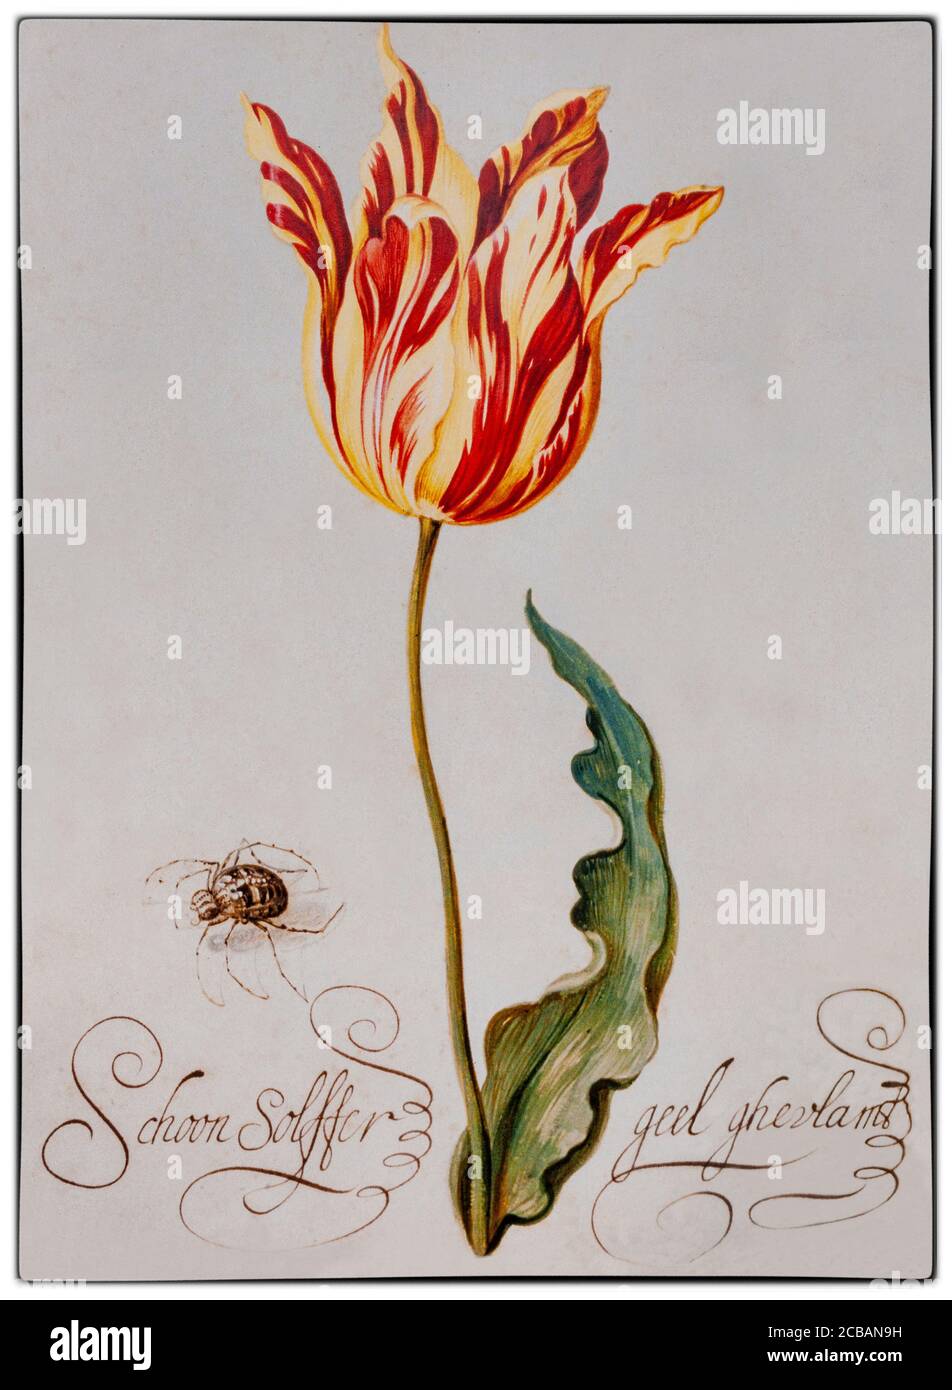 'schoon Solffer' une tulipe brisée' peinte par Bartholomeus Abrahamsz. Assteyn (1607-1669/1677), peintre néerlandais. Les tulipes « brisées » ont une infection virale, qui a causé l'apparition de belles et saisissantes bandes de couleur dans les pétales, remarquées par le botaniste flamand Carolus Clusius, père de l'obsession hollandaise des tulipes, aux pays-Bas dans les années 1600. Banque D'Images